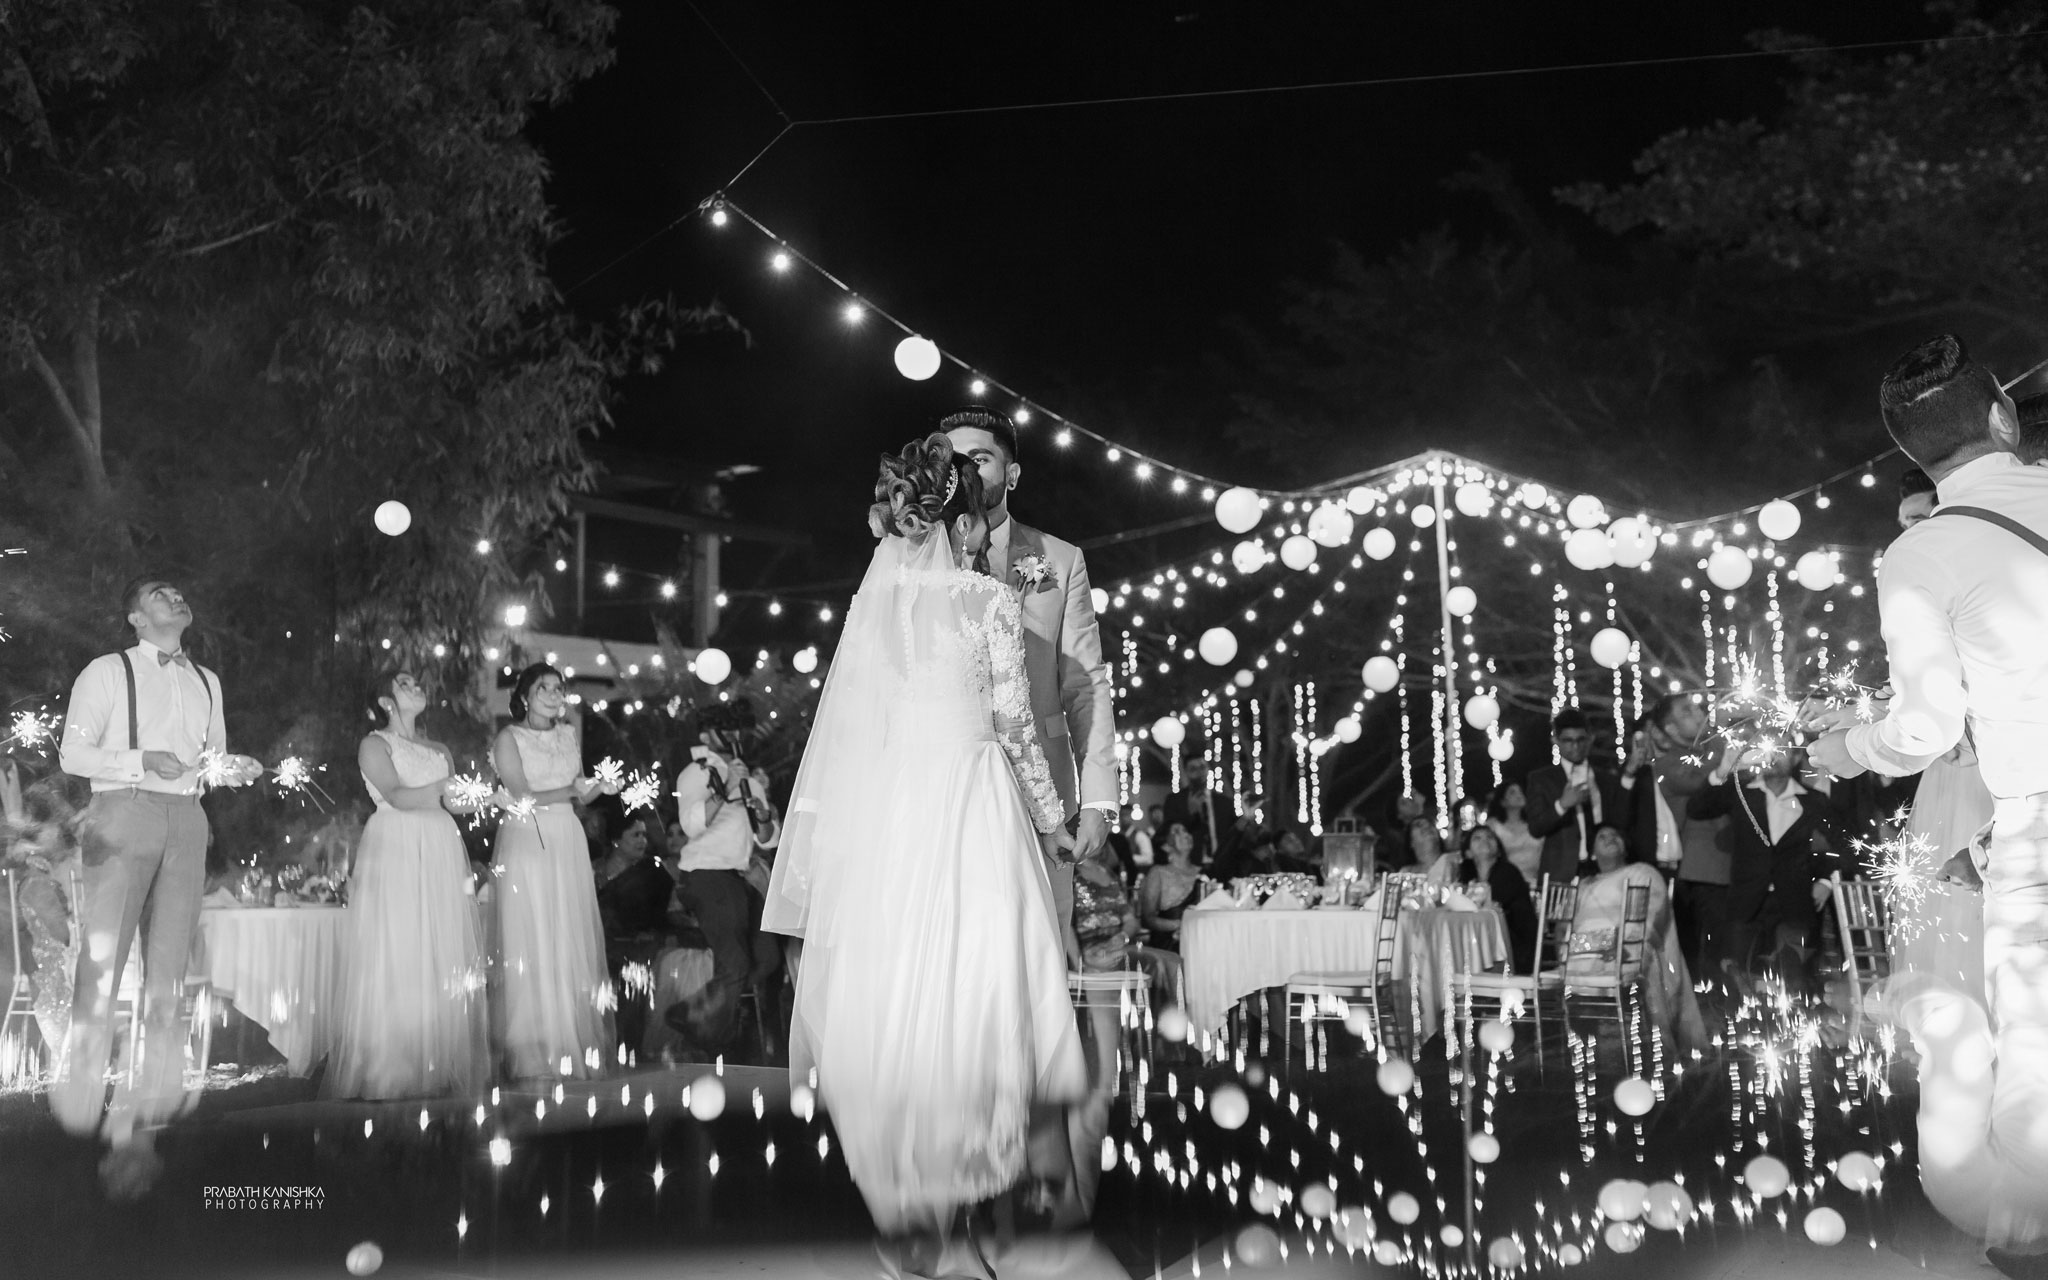 Imasha & Nimesh - Prabath Kanishka Wedding Photography